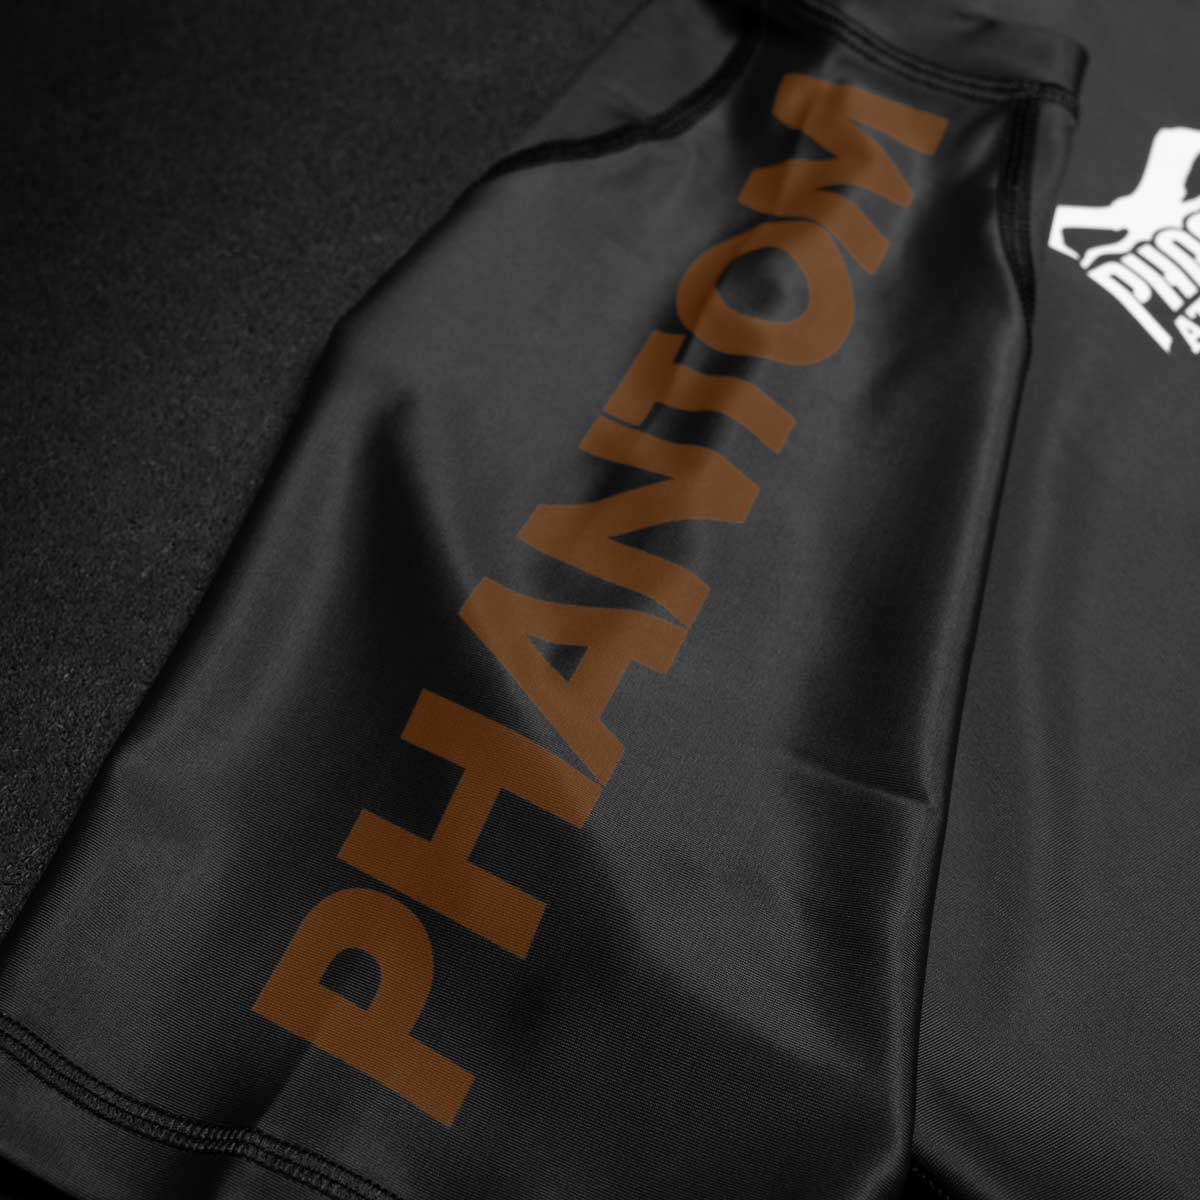 Phantom Ranked No-Gi Rashguard nach IBJJF Richtlinien in Braun. Ideal für dein BJJ und Kampfsport Training und Wettkampf.